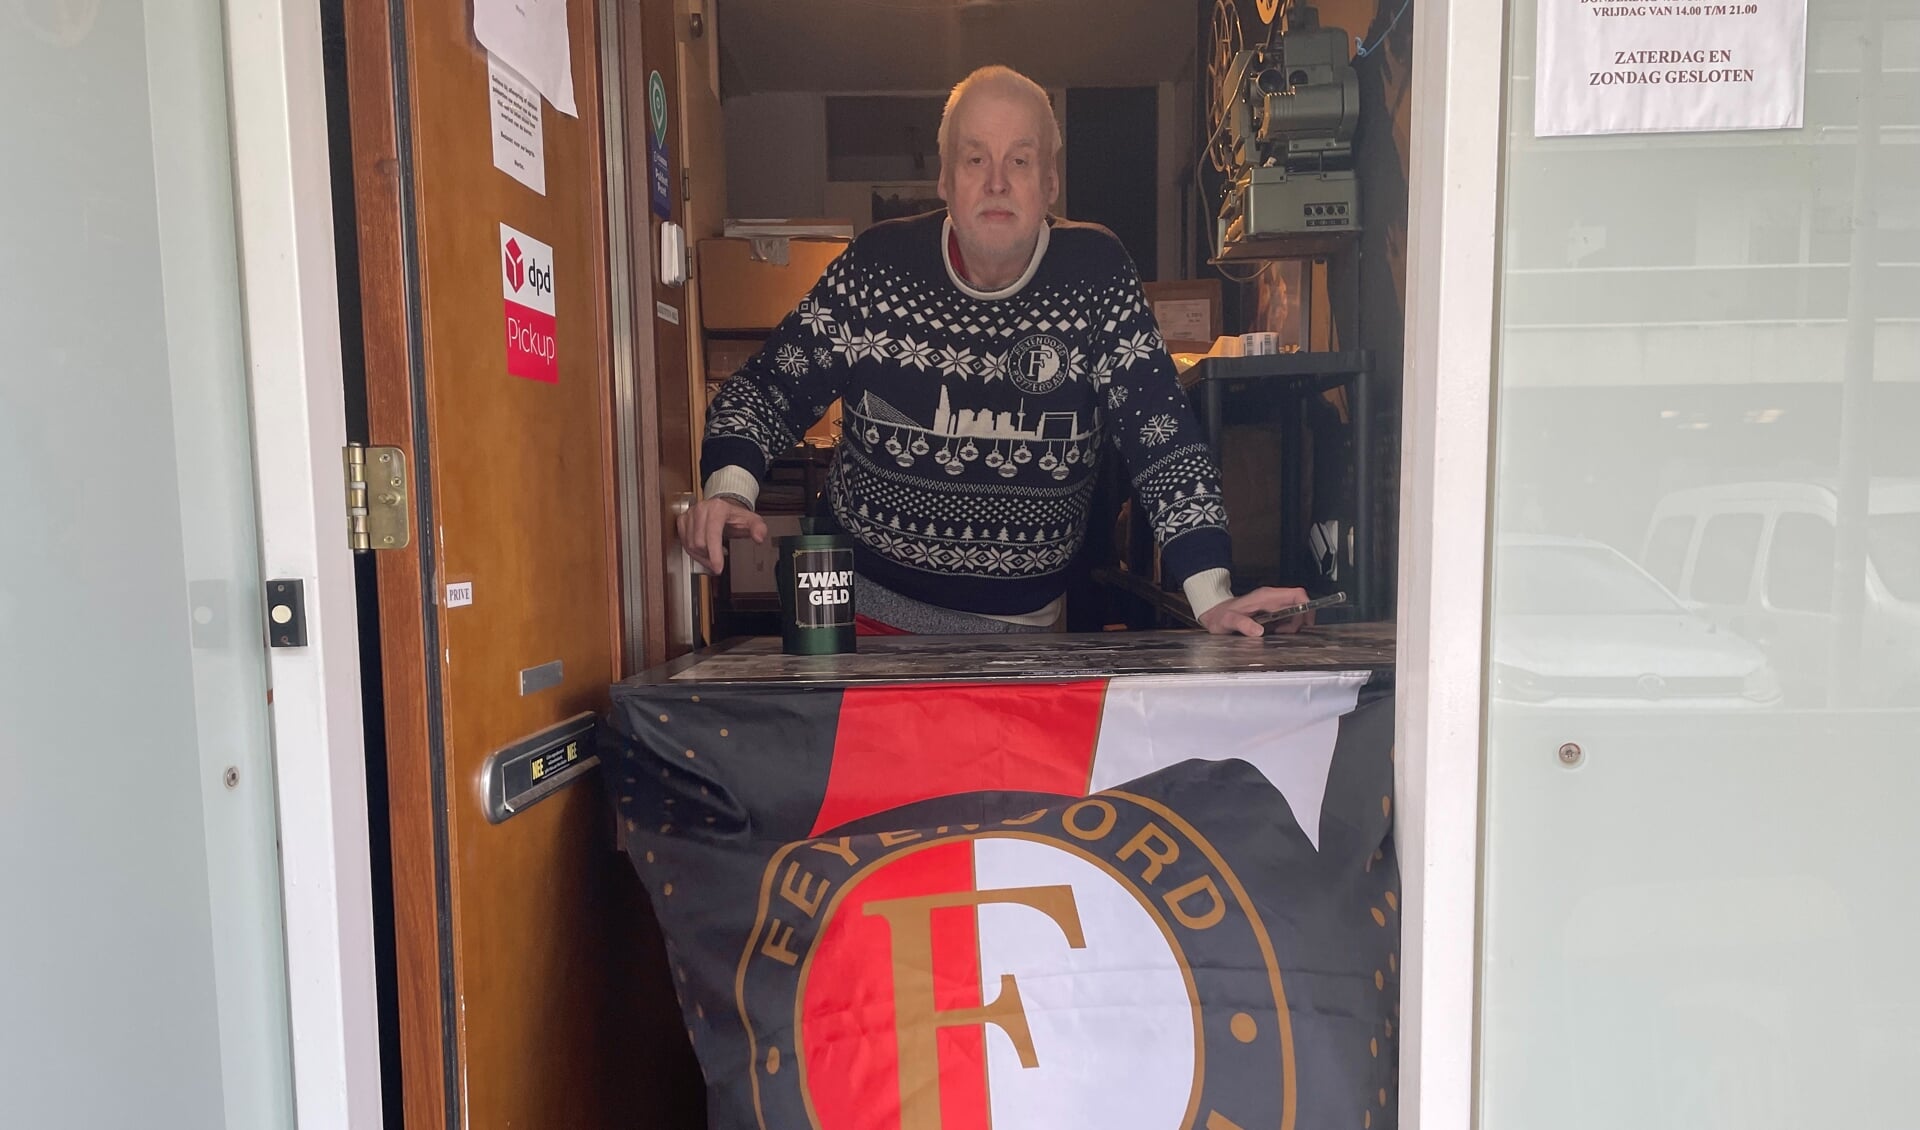 Martin woont dan wel in de Ajaxstraat, maat laat er geen onduidelijkheid over zijn dat Feyenoord zijn cluppie is! Foto: Mark Boninsegna